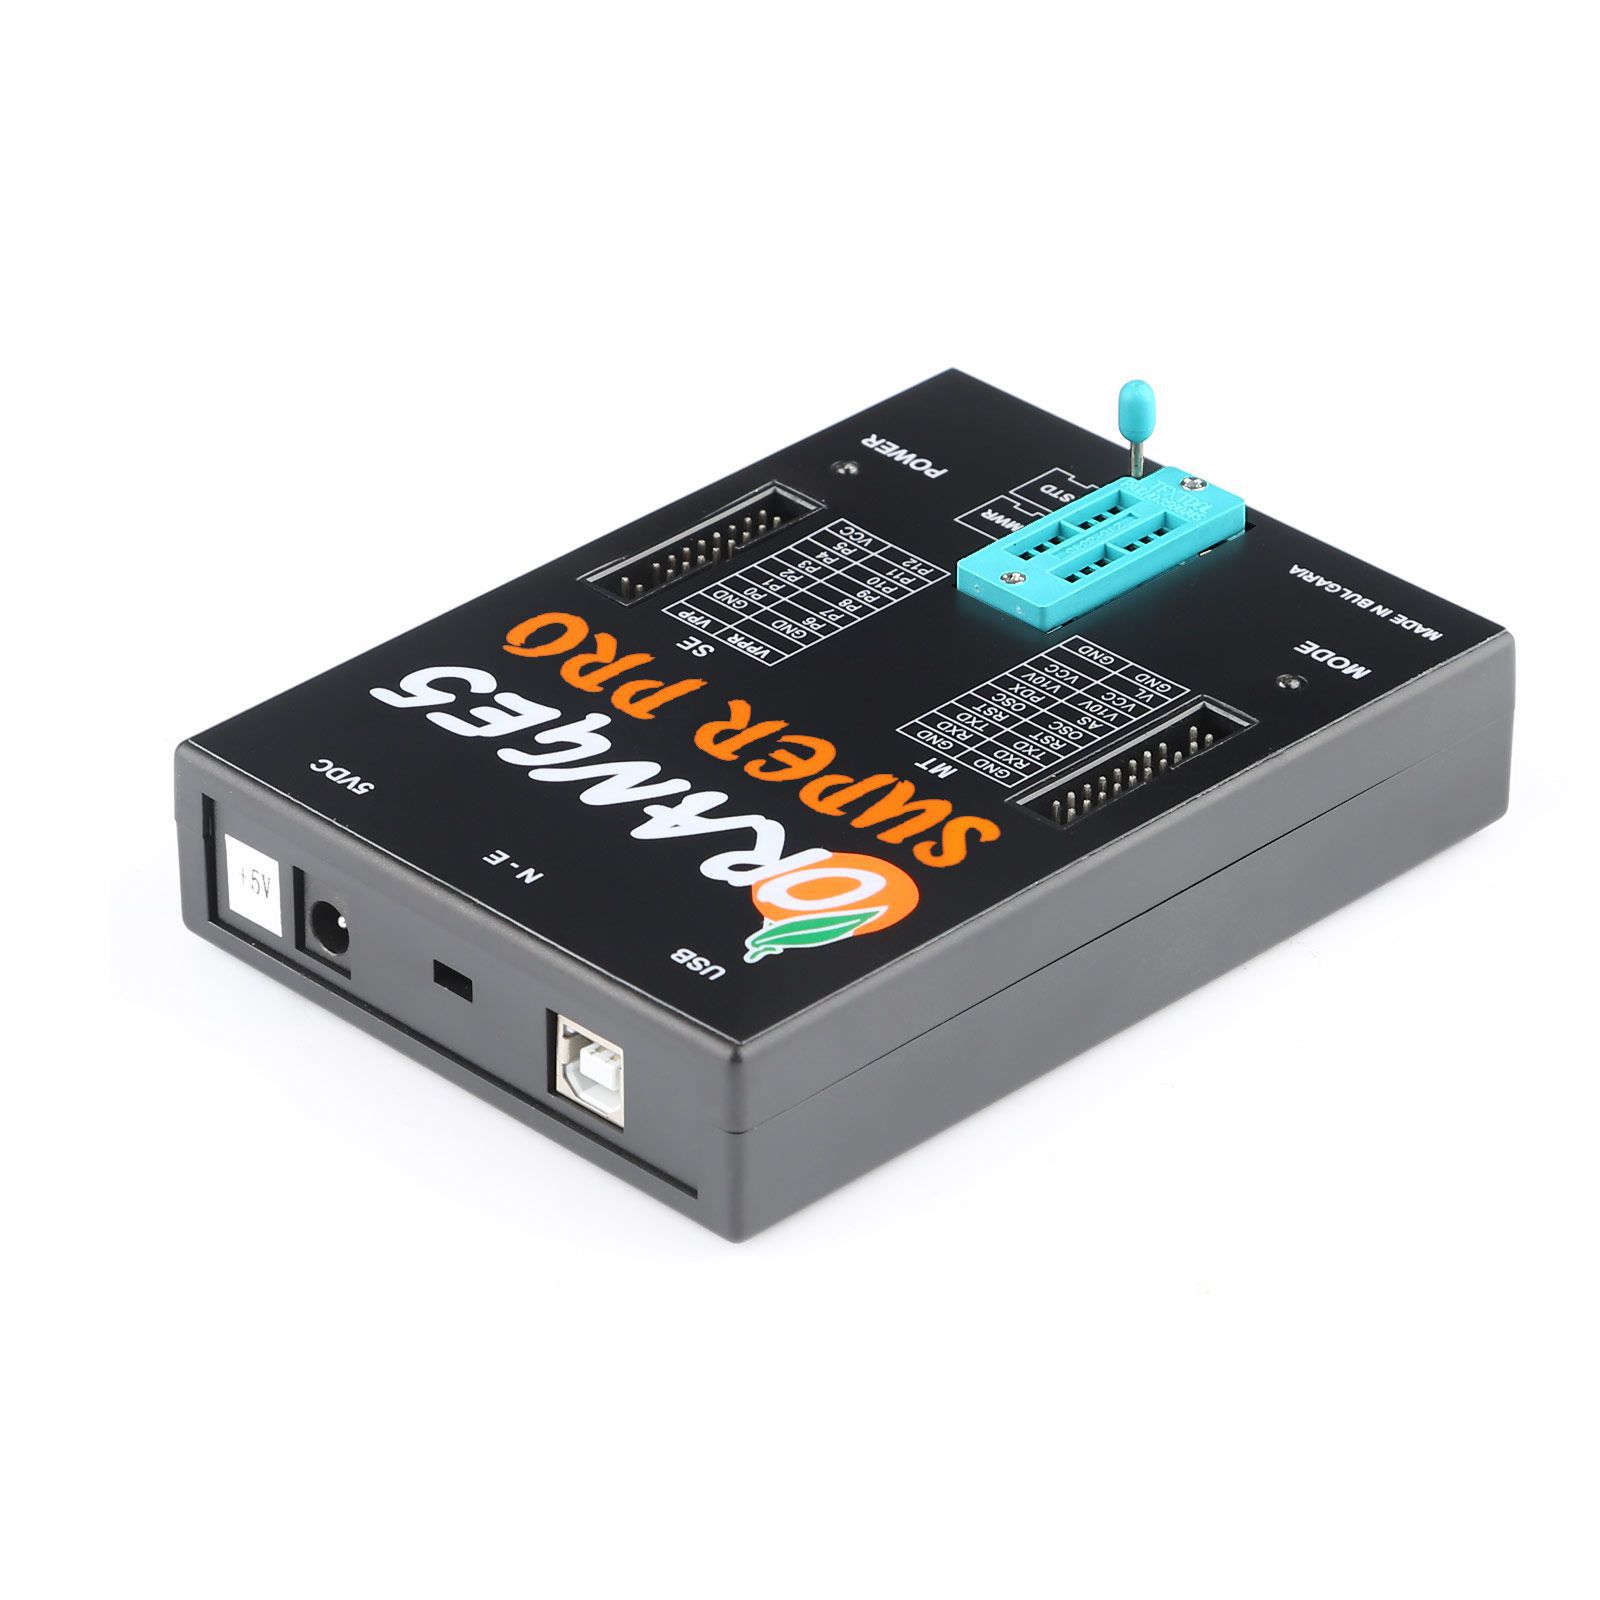 Haupteinheit von Orange5 Super Pro V1.35 Programmierwerkzeug und USB Dongle ohne Adapter